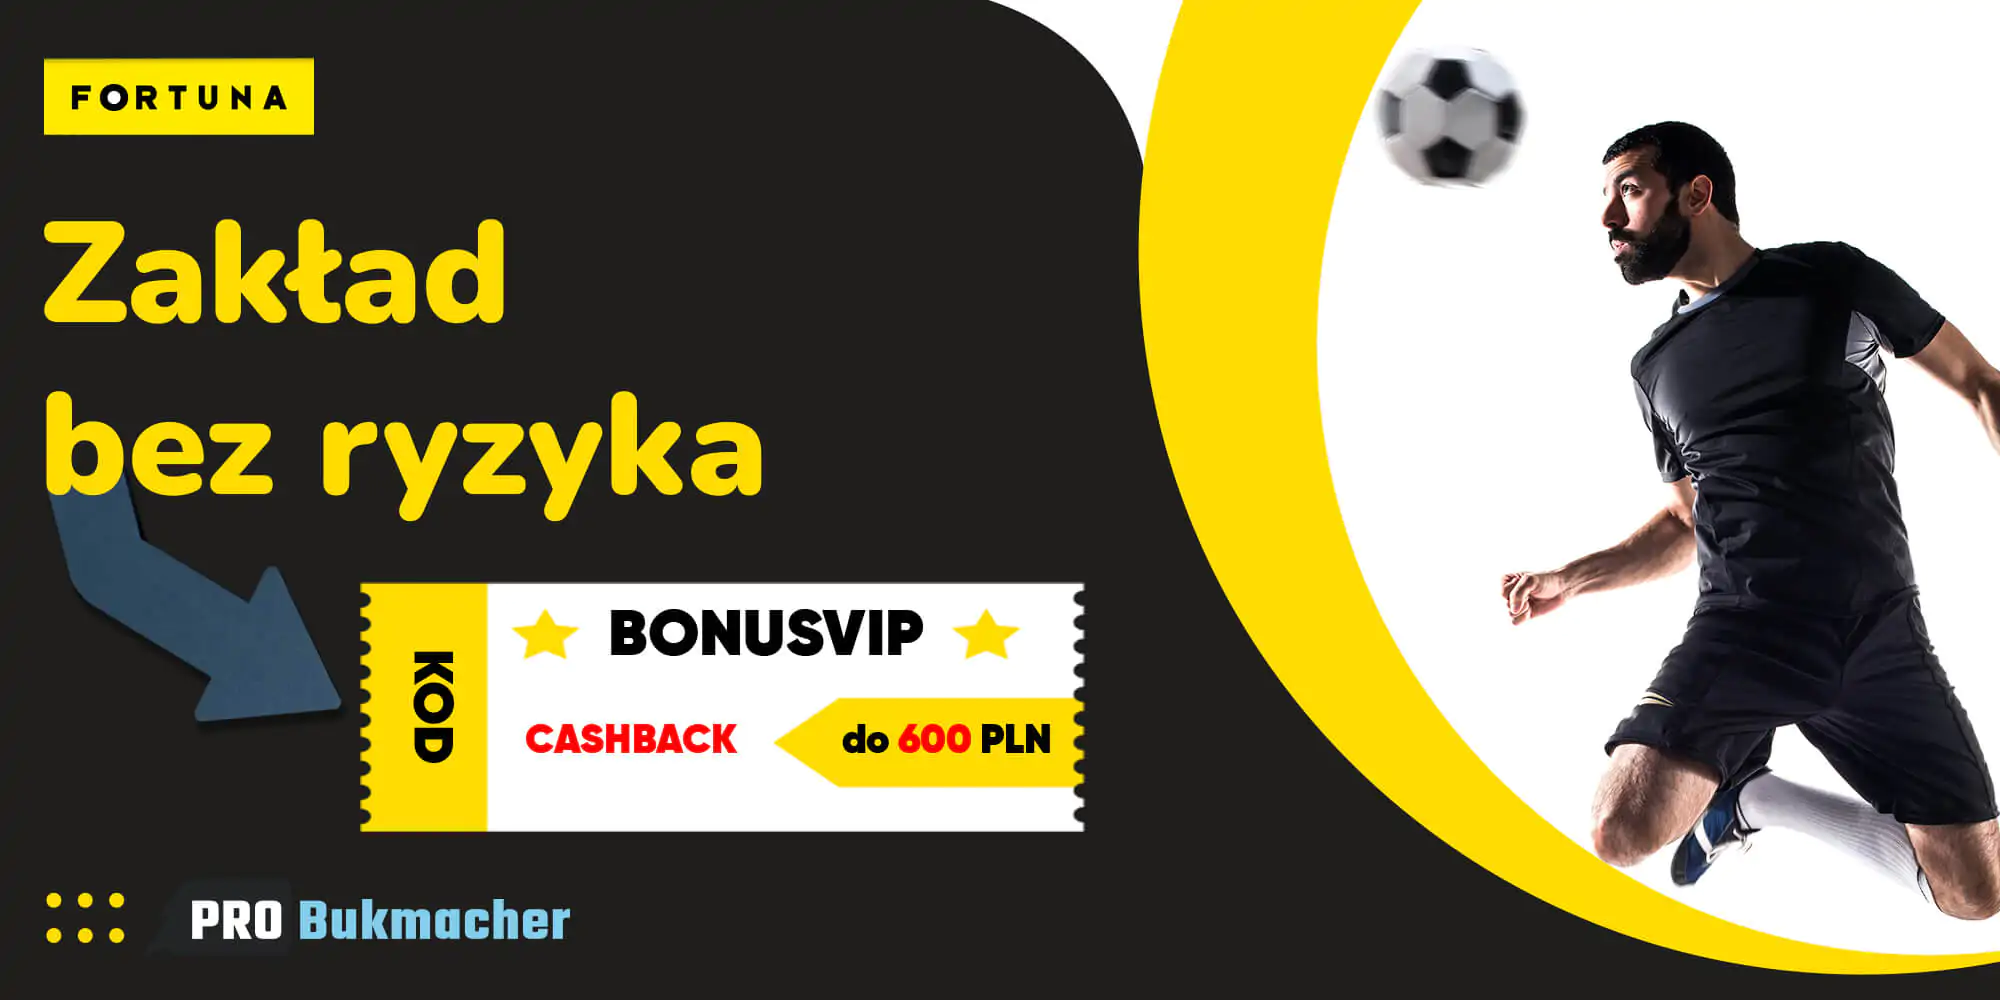 Kod Bonusowy BonusVIP daje Cashback do 600 PLN w Fortunie